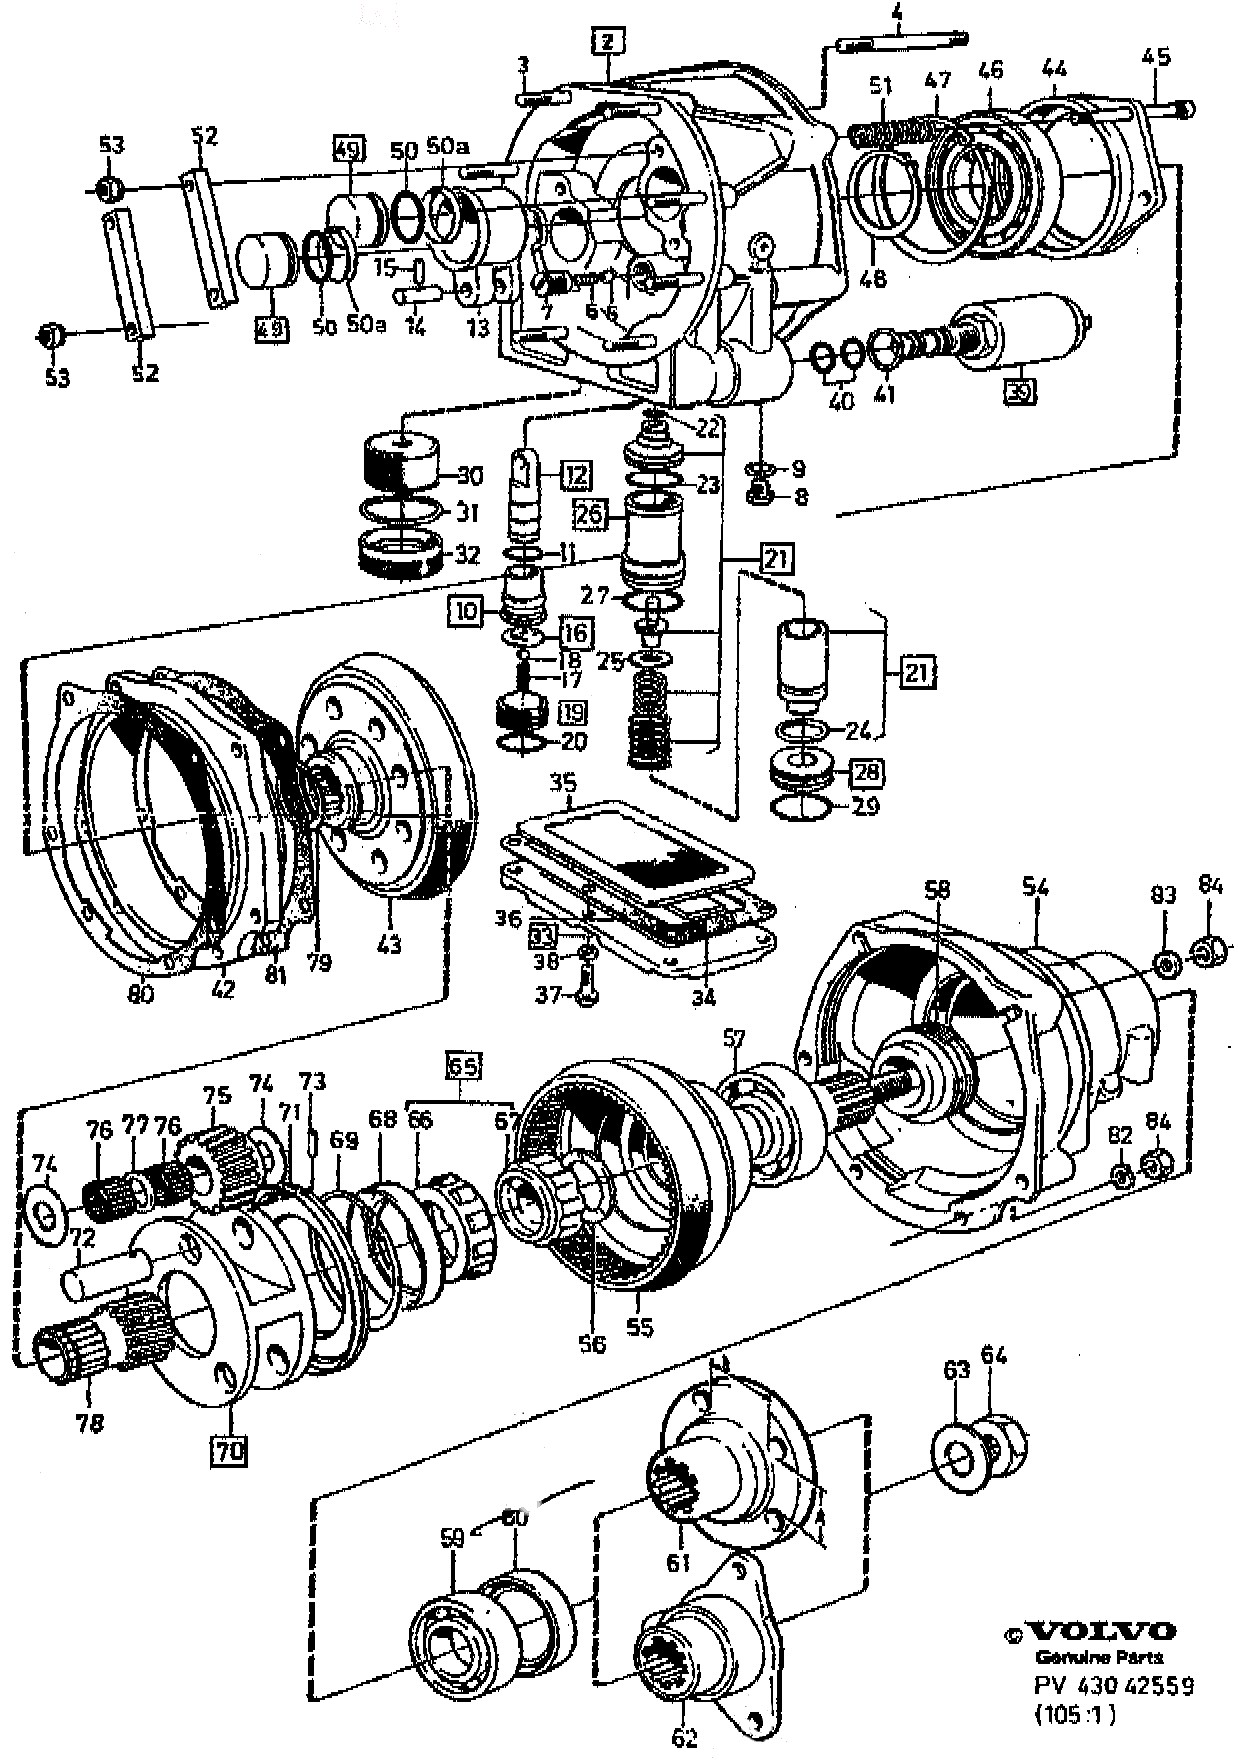 Car Starter Parts Diagram Volvo Parts Schematic Wiring Diagram Of Car Starter Parts Diagram